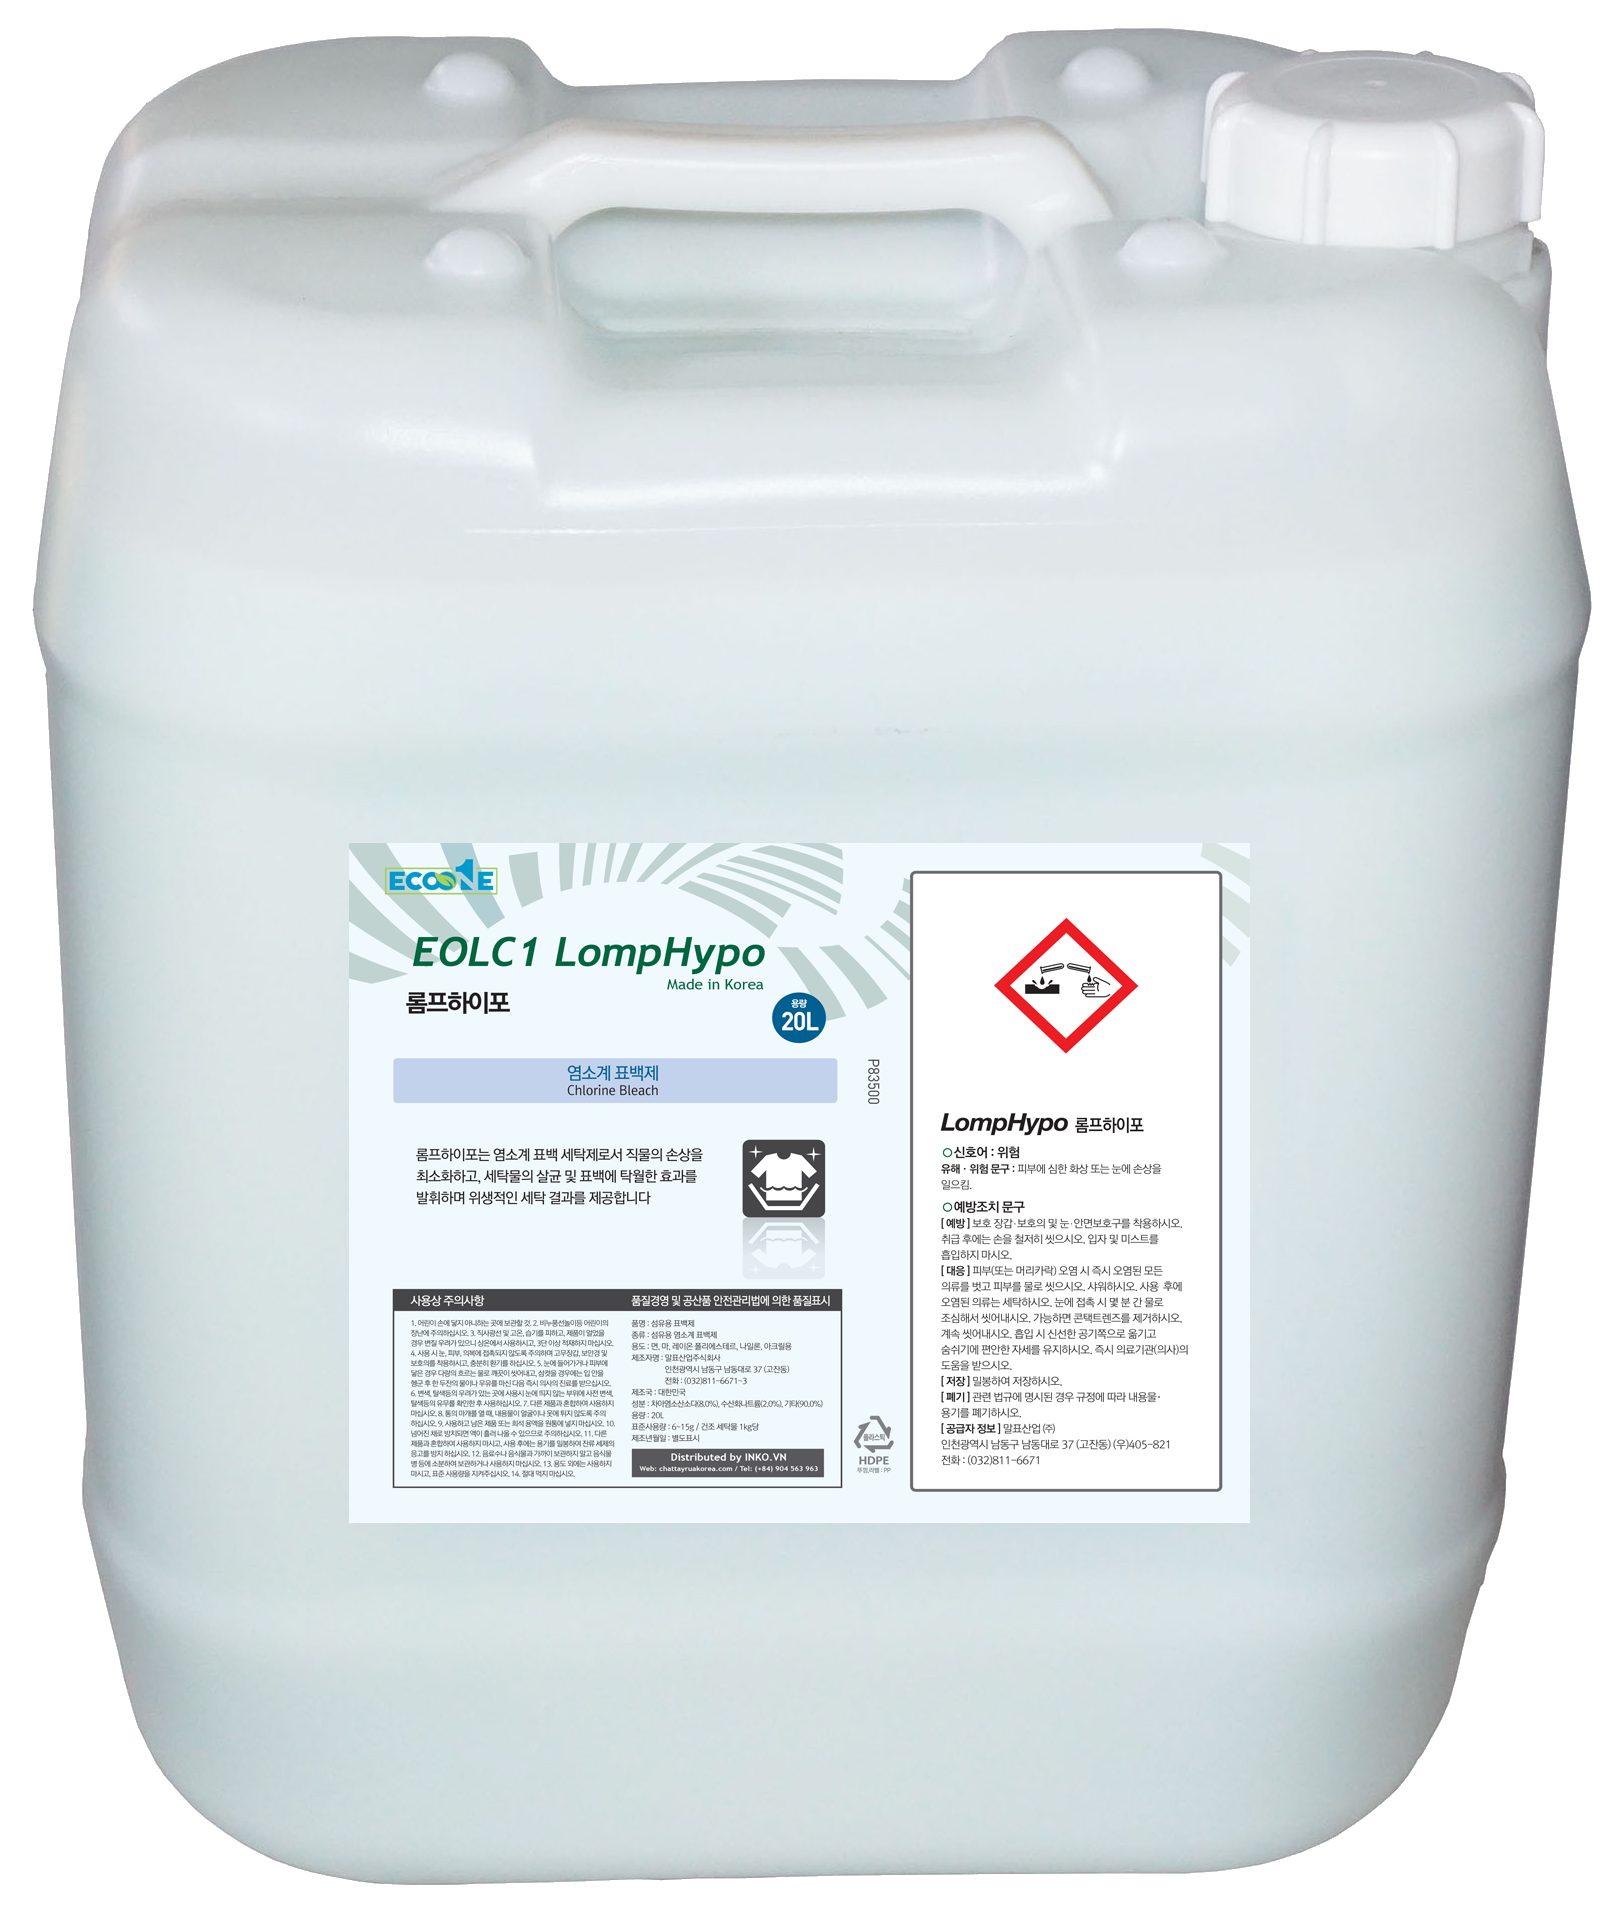 Hóa chất tẩy trắng khử trùng và giảm thiểu hư hại cho vải gốc Clo EOLC1 LompHypo dung tích 18,75 lit